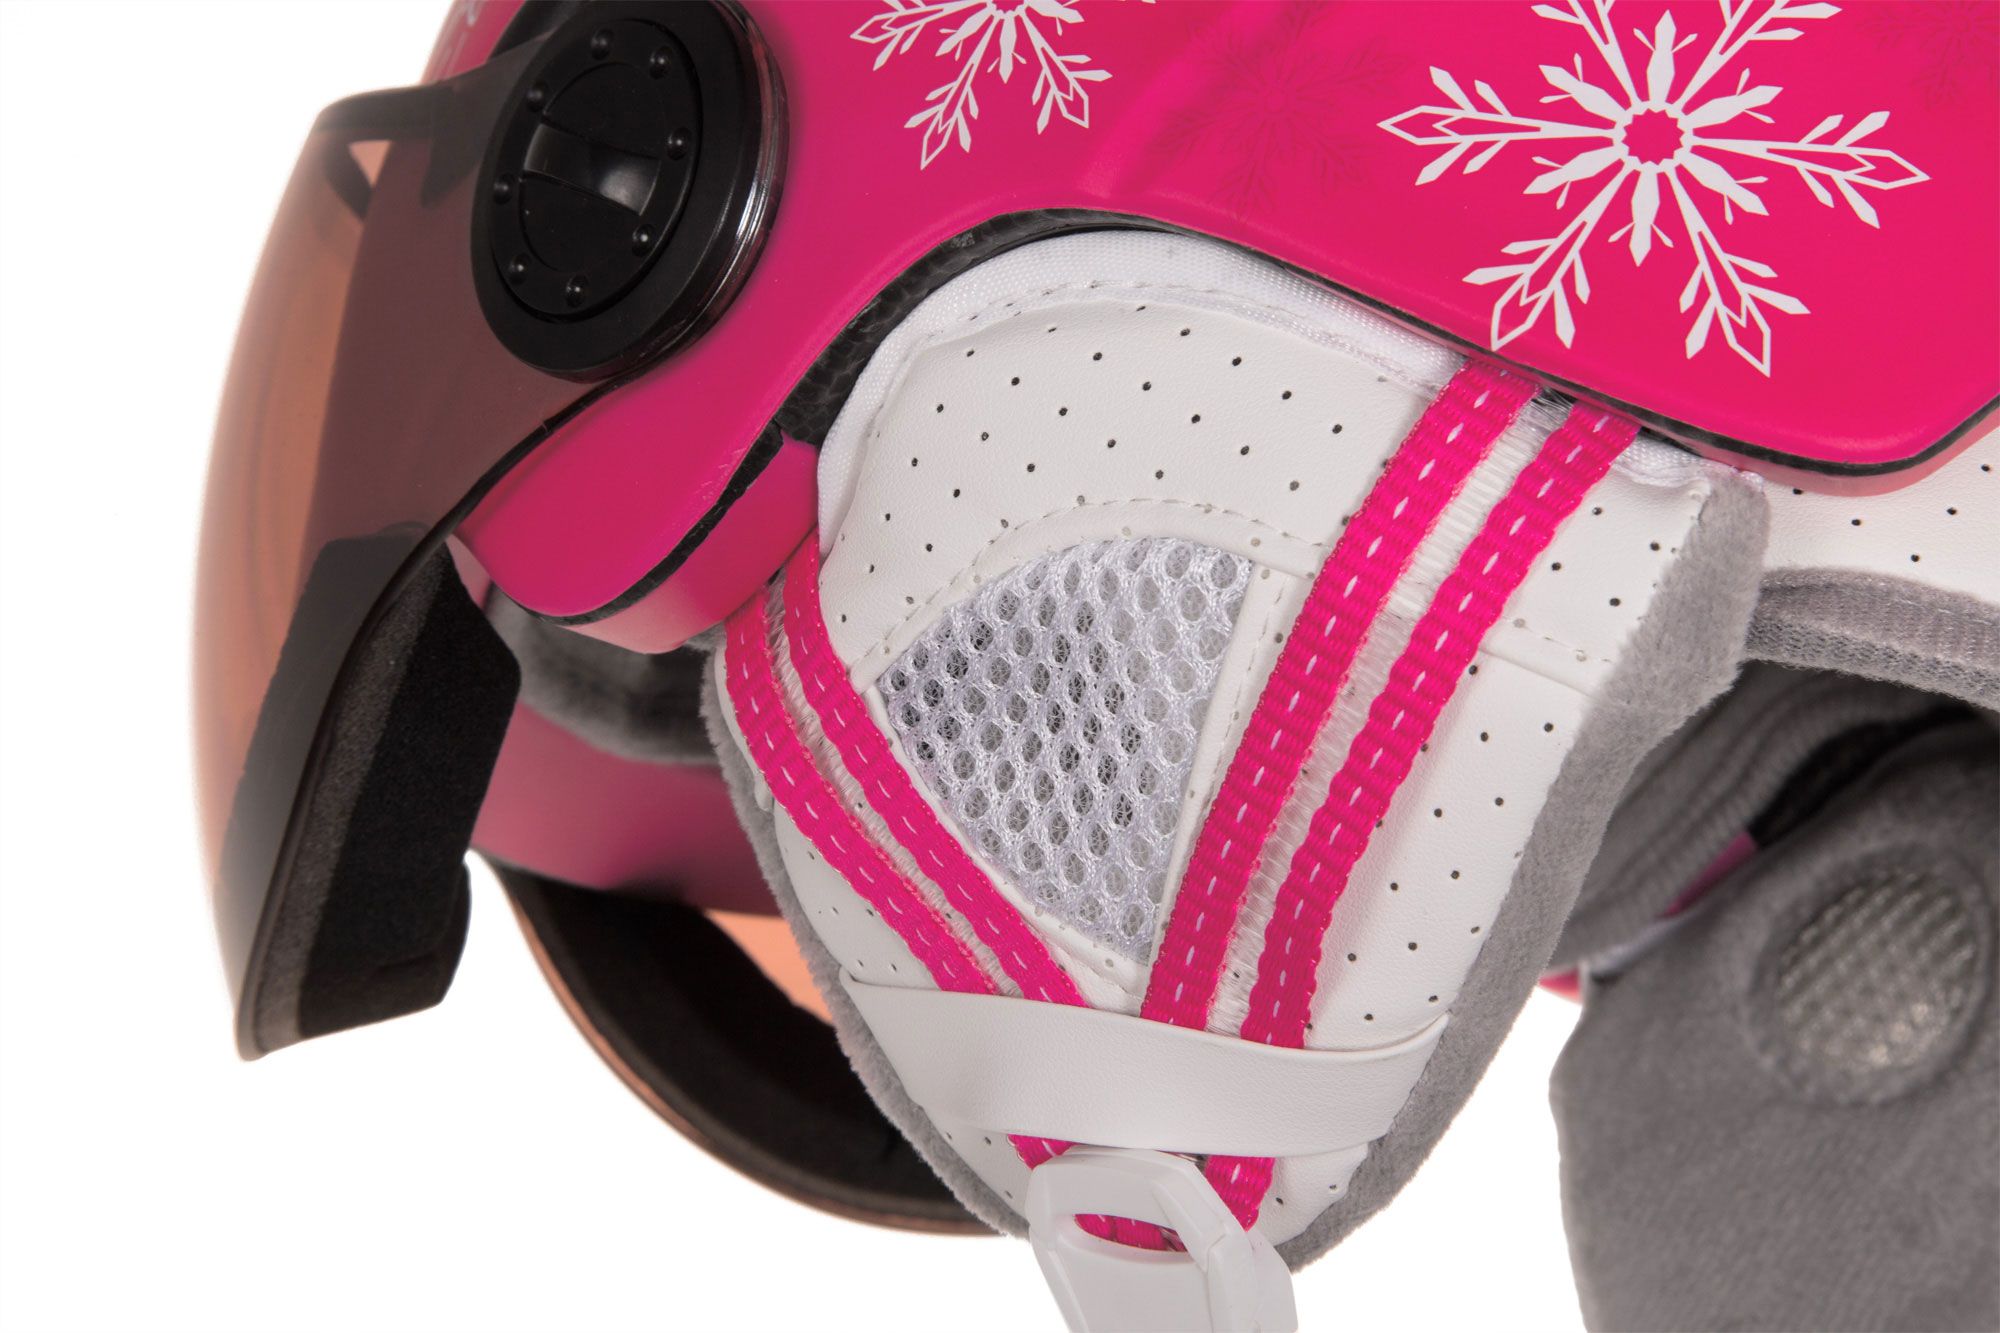 Children’s ski helmet with a visor